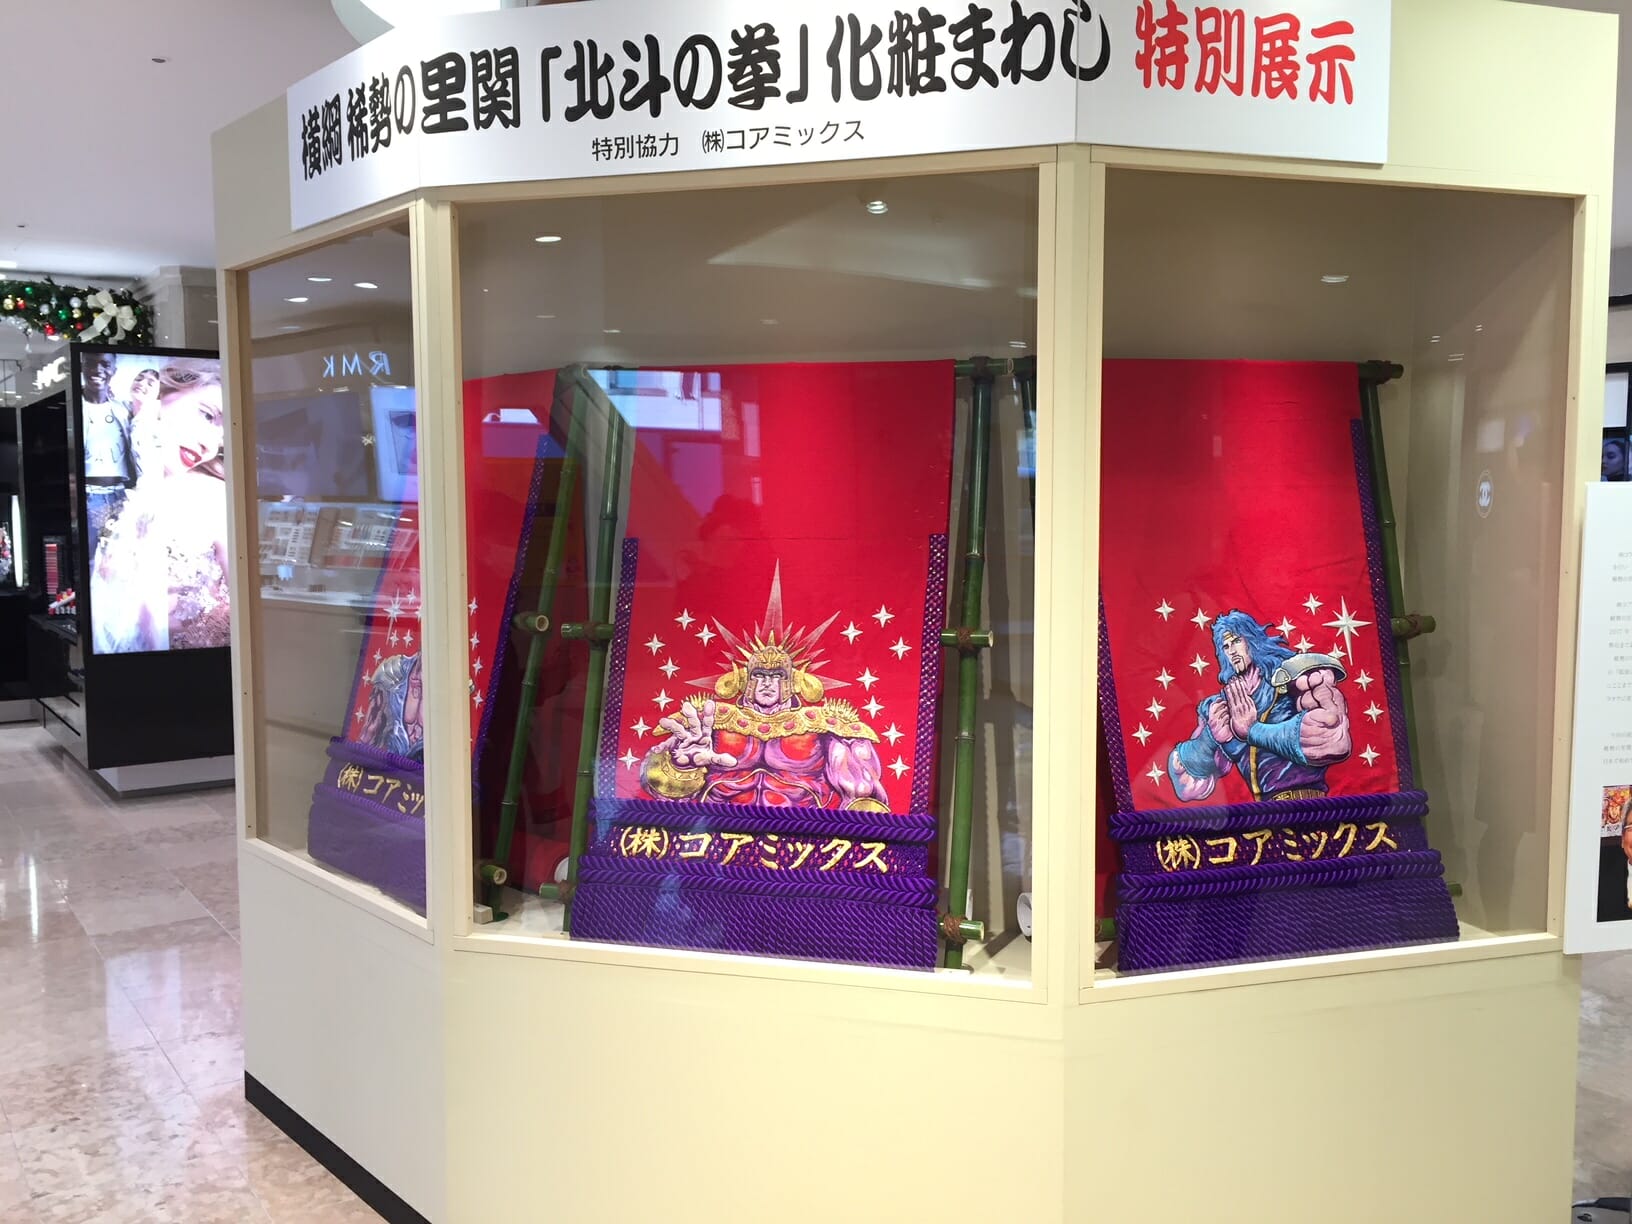 ¡El maquillaje "Fist of the North Star" se exhibe en los grandes almacenes Tsuruya en Kumamoto!